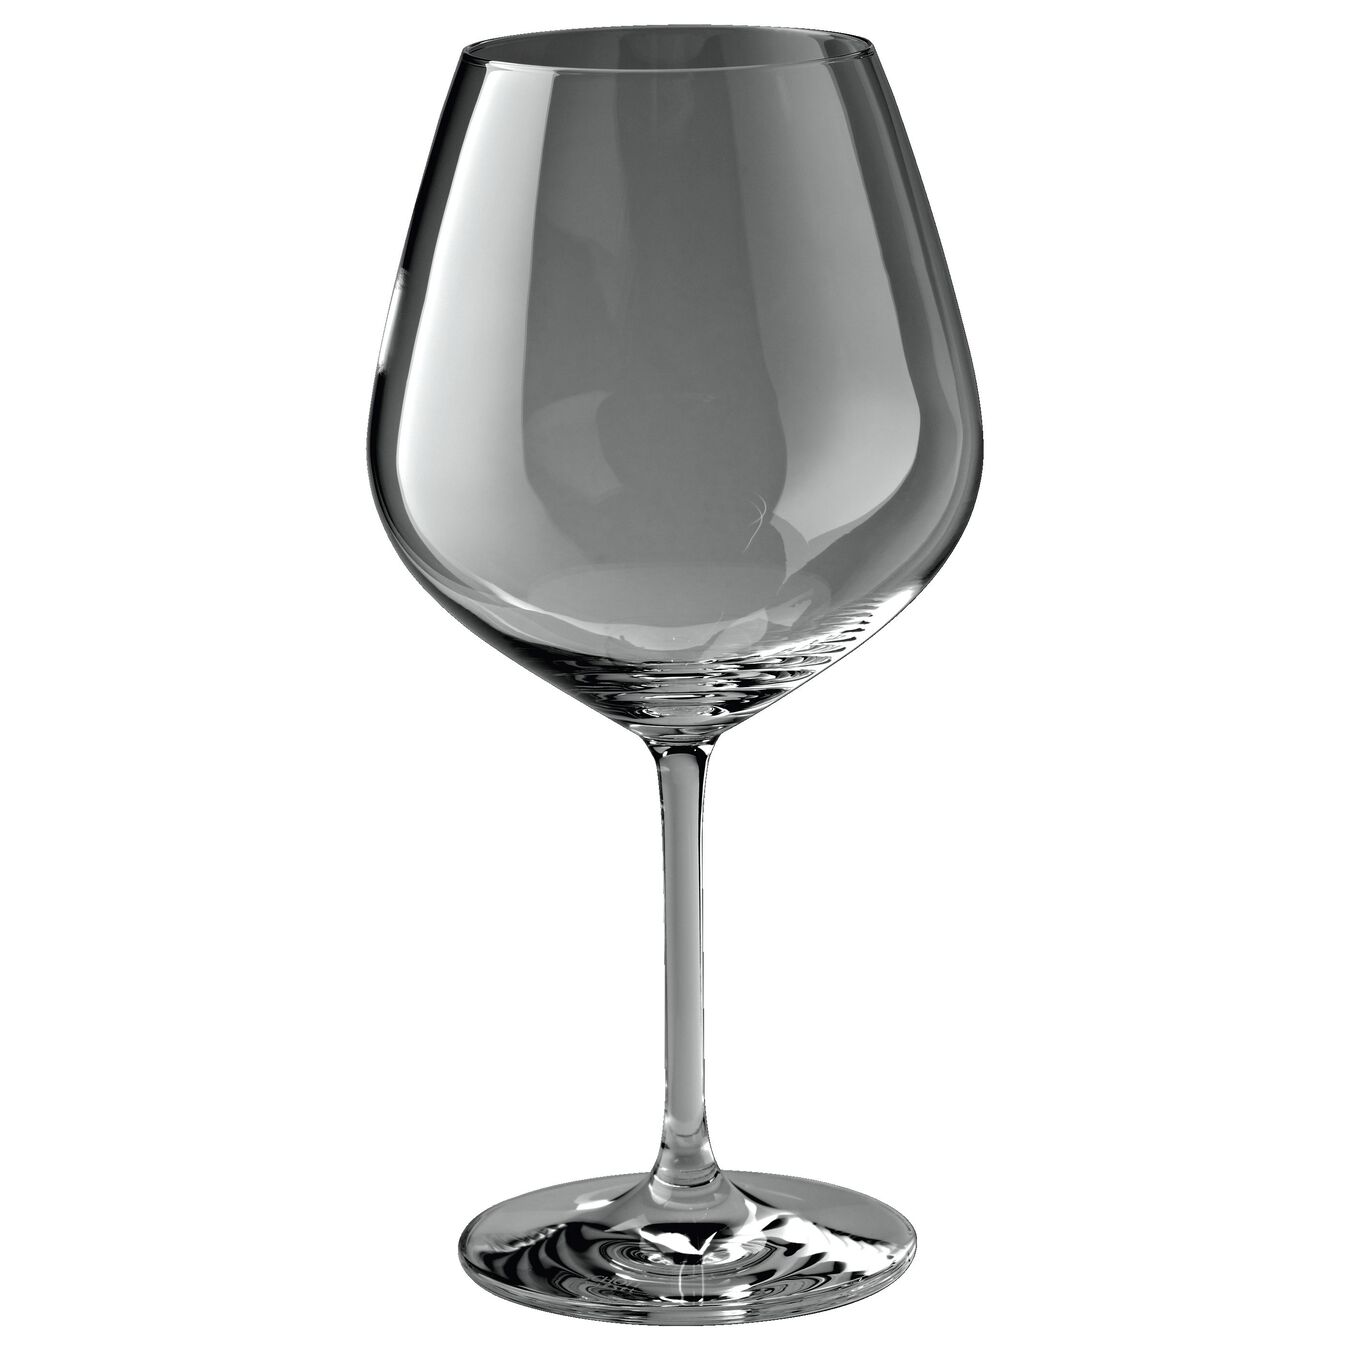 Tazza di vino rosso - 725 ml, vetro cristallino,,large 2